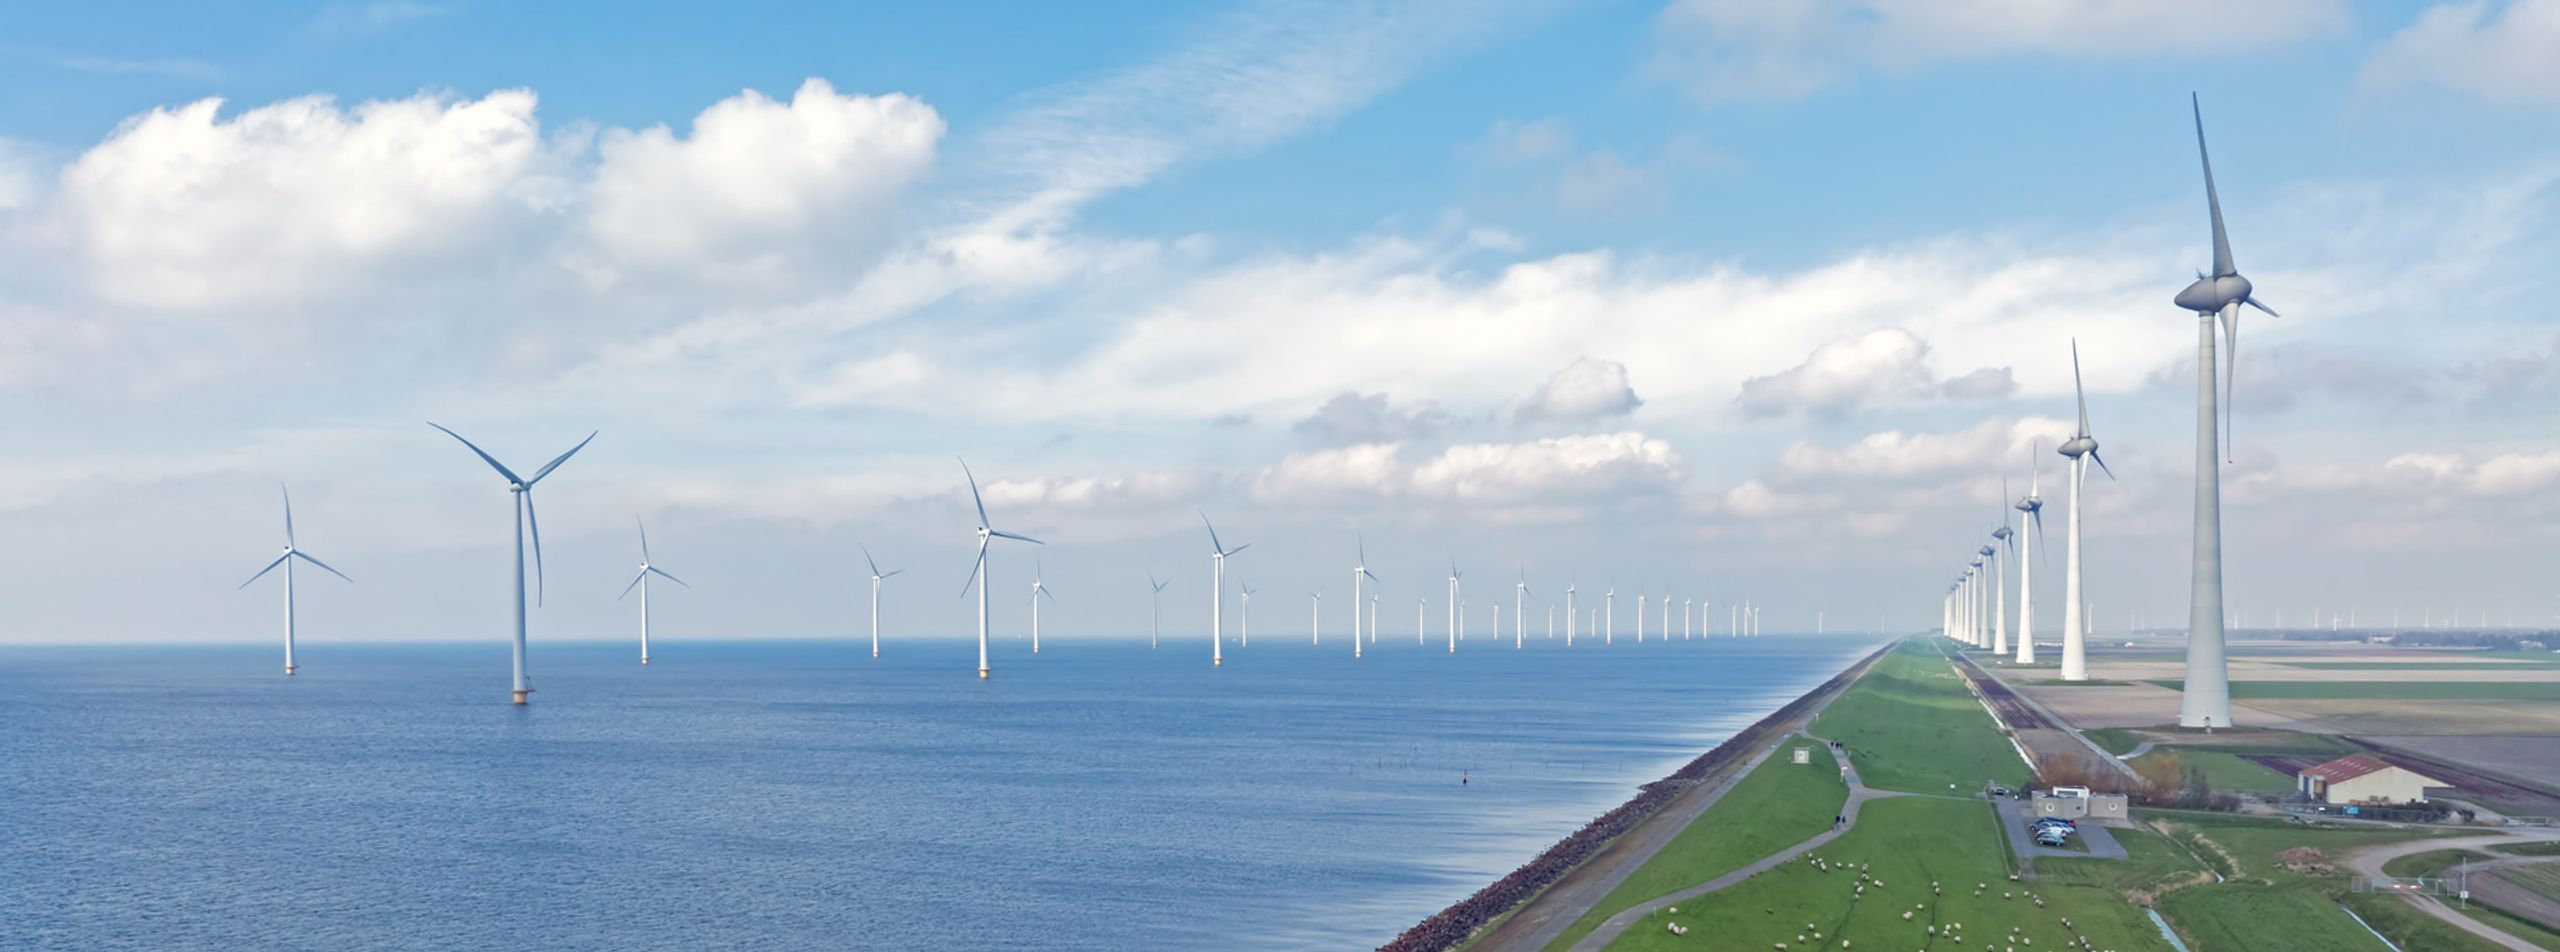 La transizione energetica avrà ricadute anche sul territorio. Turbine eoliche sull'argine vicino a Urk nei Paesi Bassi (Keystone SDA).